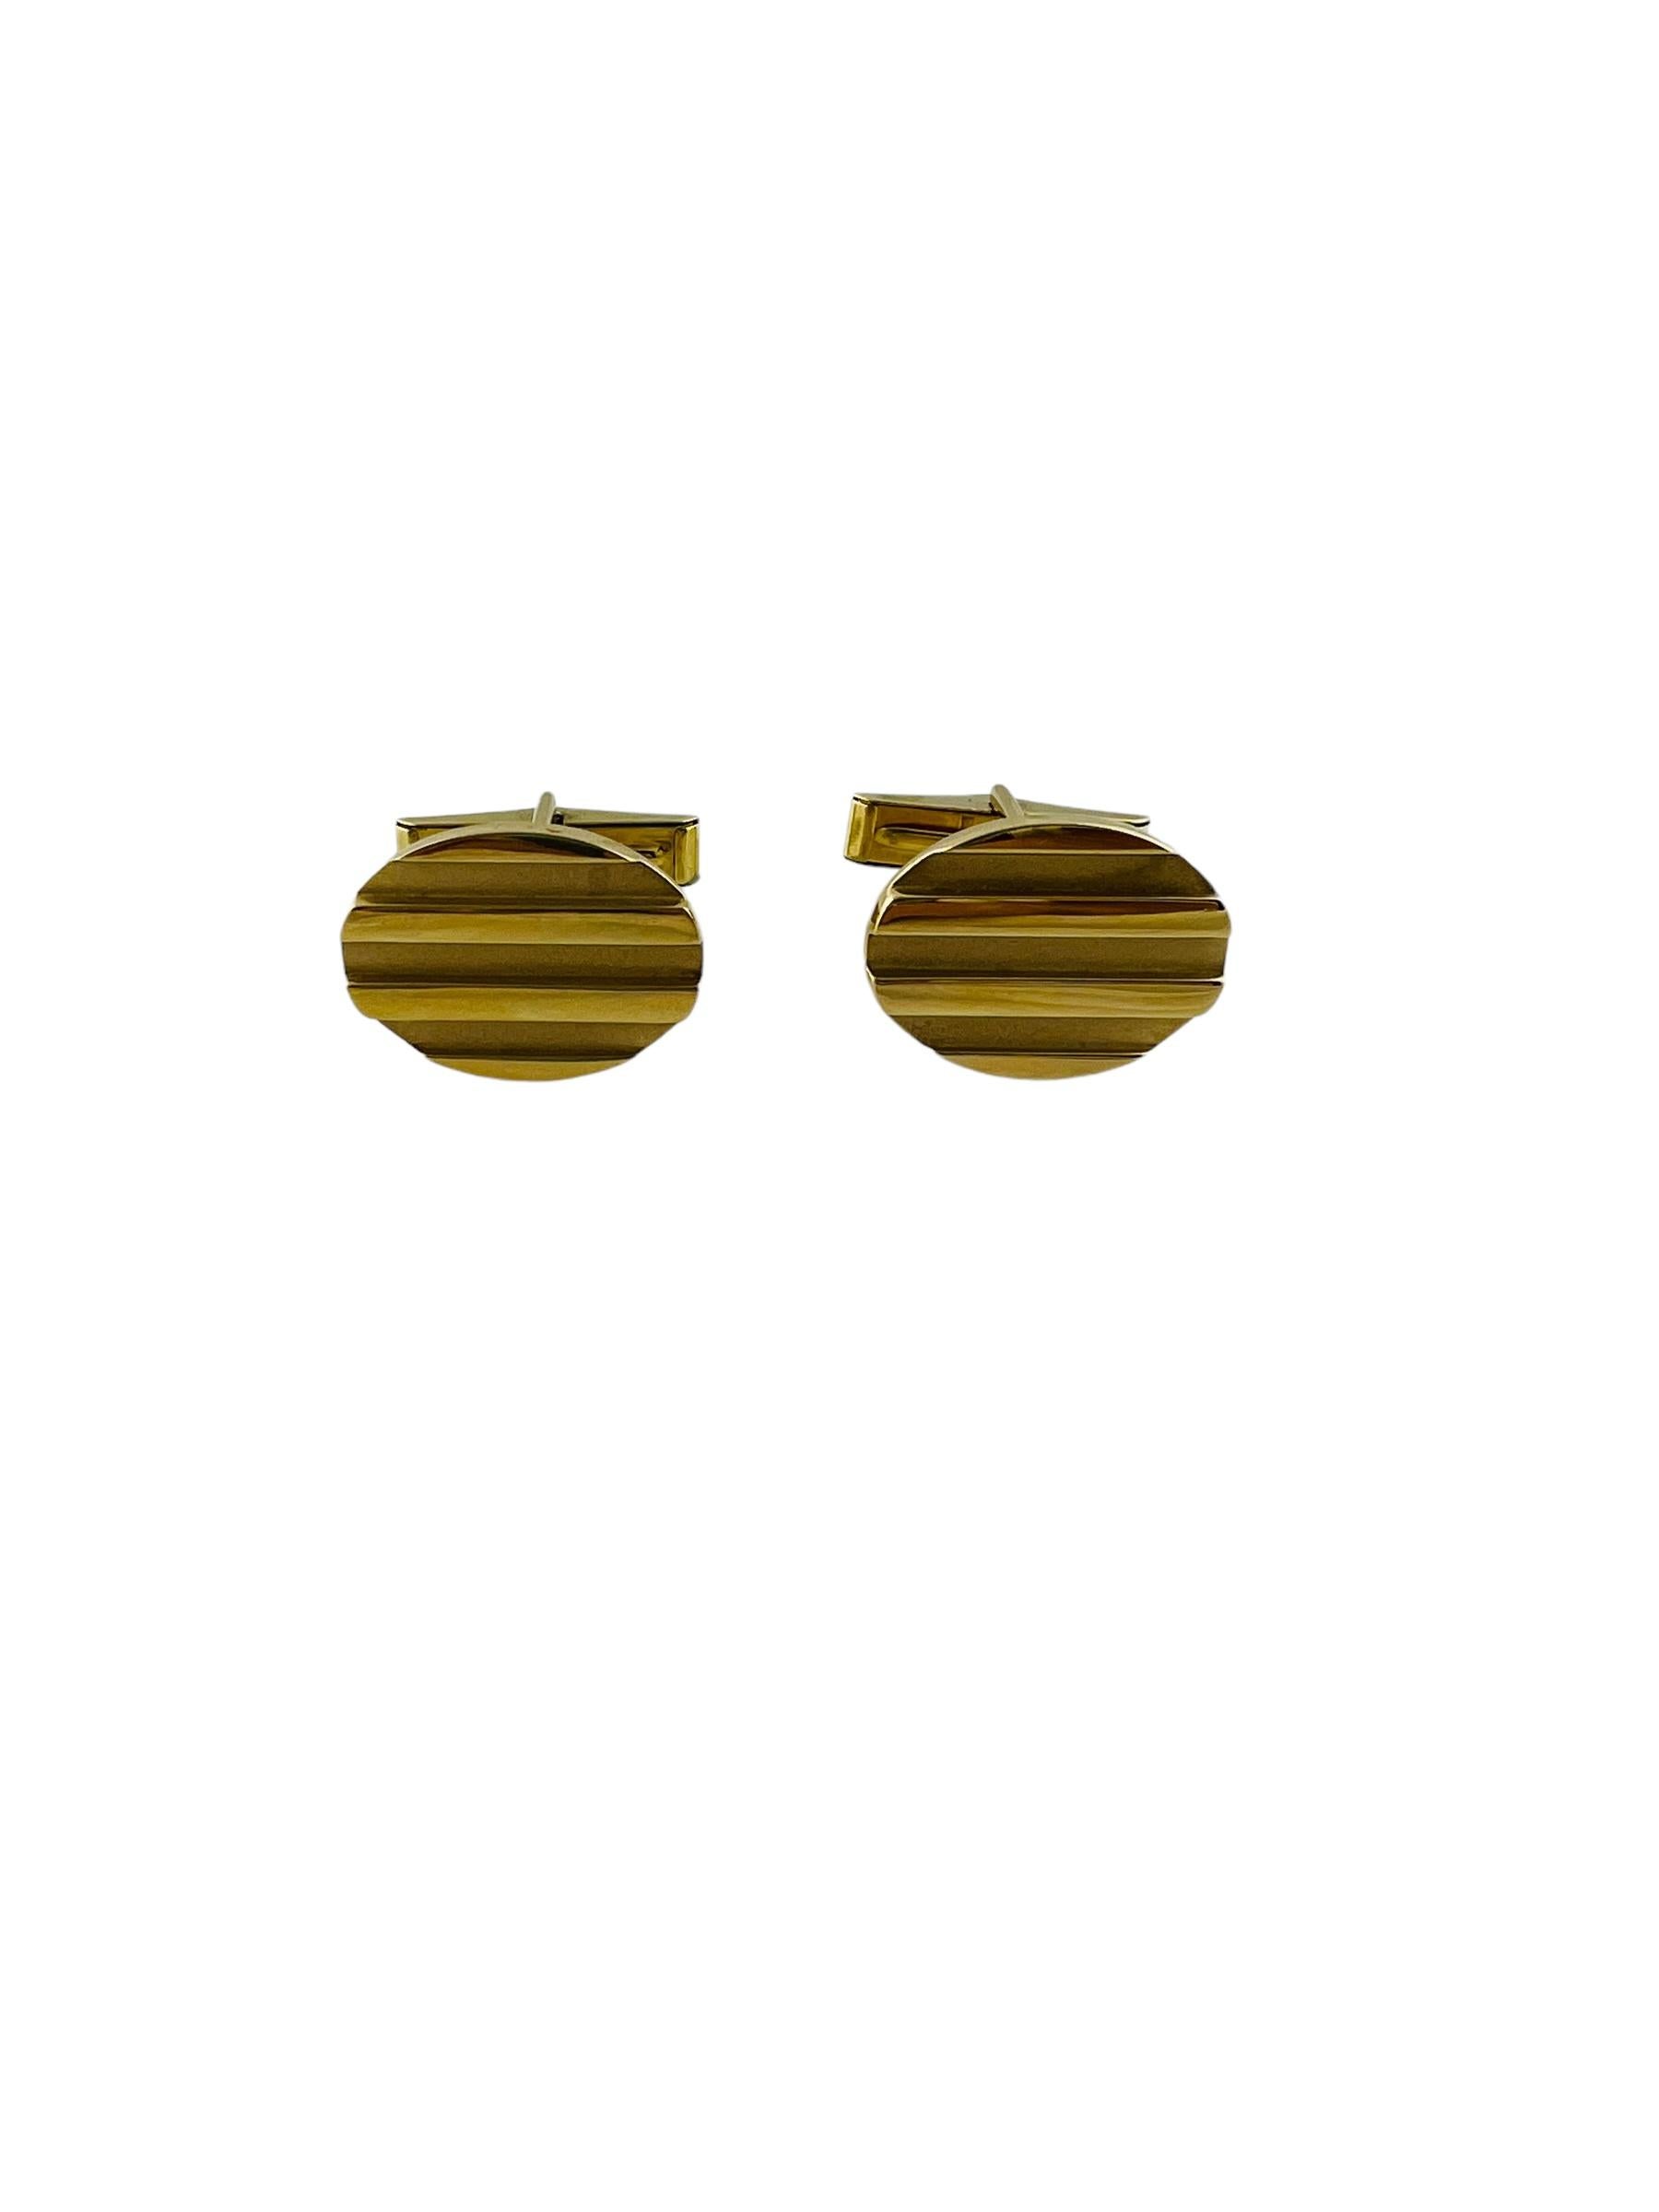 1995 Tiffany & Co. 18K Gelbgold Oval gestreifte Manschettenknöpfe

Diese Manschettenknöpfe von Tiffany & Co. sind in 18 Karat Gelbgold gefasst.

Die Vorderseite der Manschettenknöpfe ist oval mit erhabenen Streifen. Die Streifen sind aus poliertem